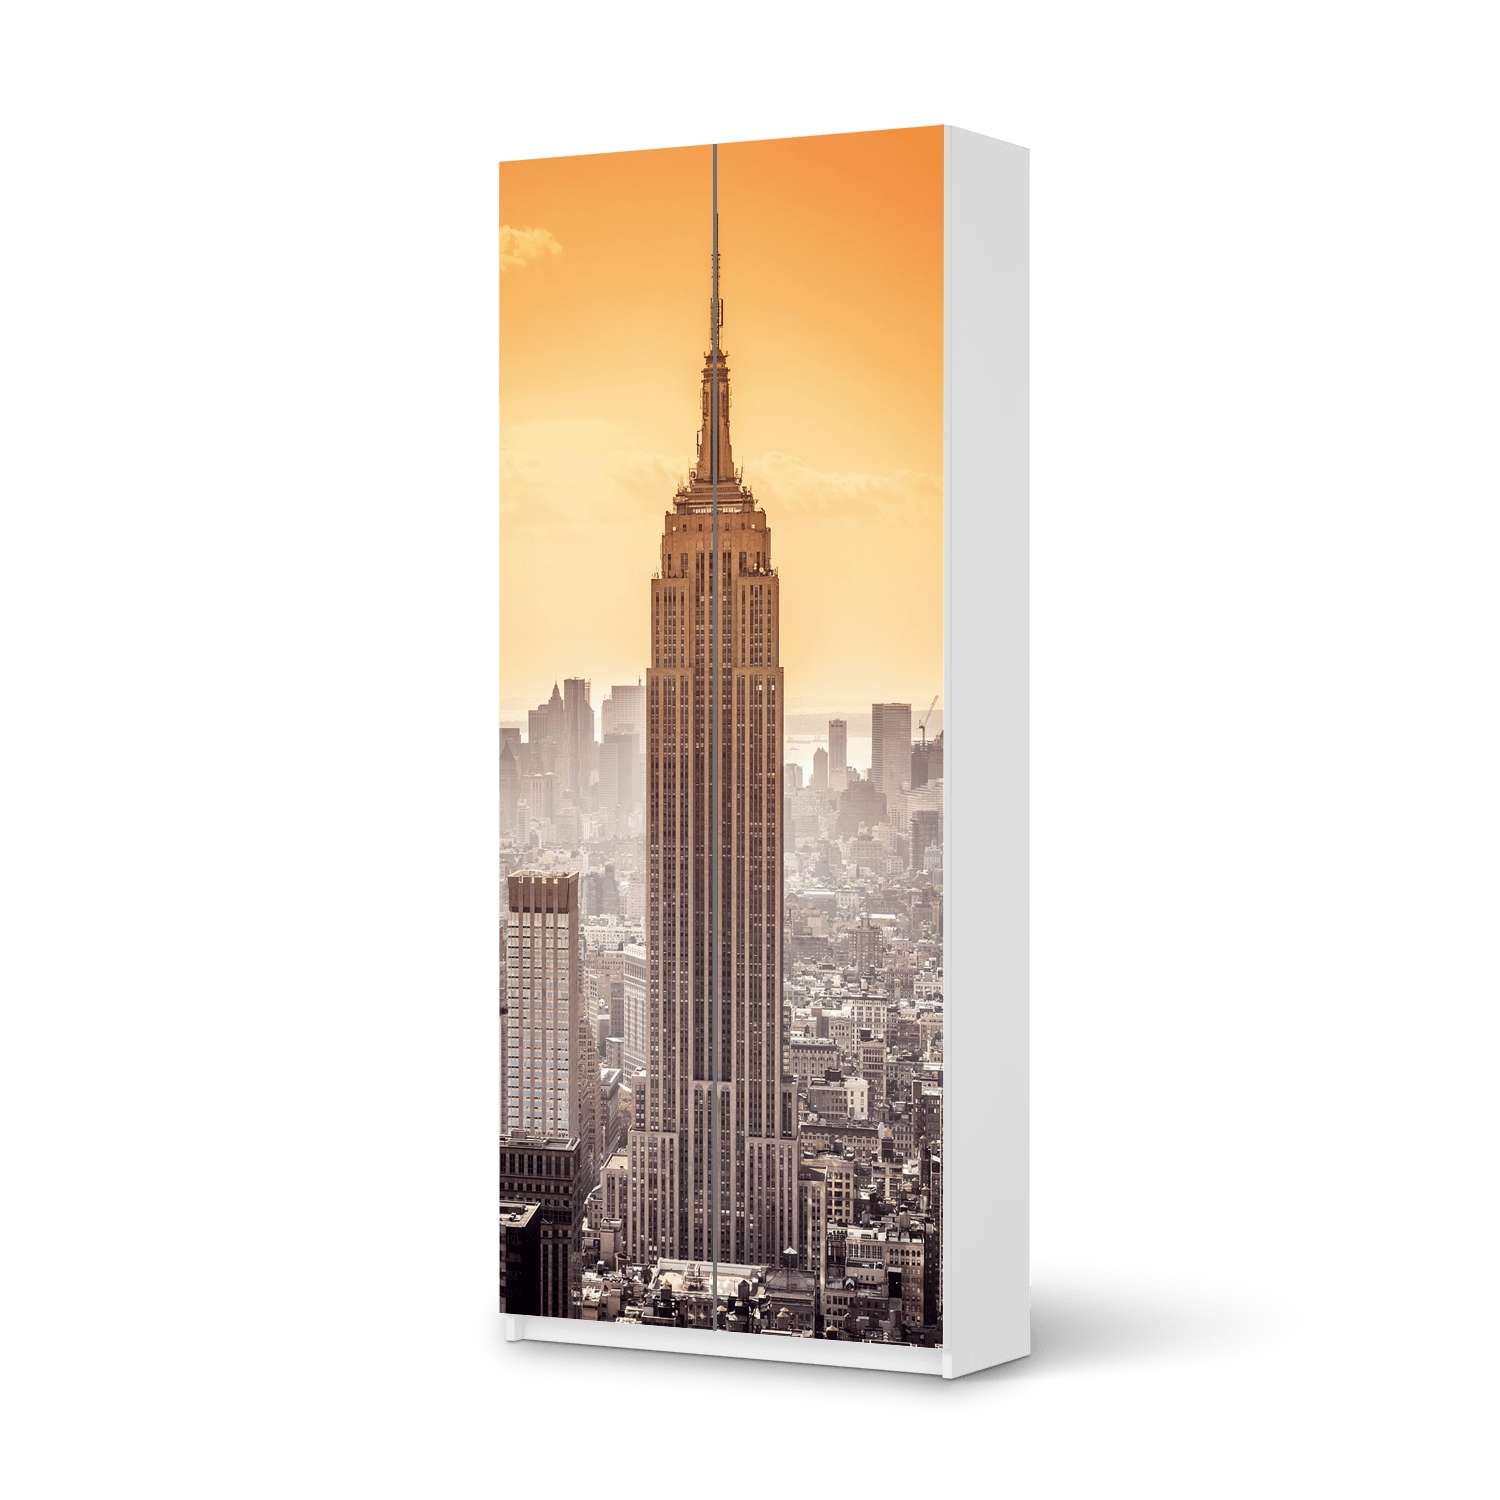 M?belfolie IKEA Pax Schrank 236 cm H?he - 2 T?ren - Design: Empire State Building von creatisto